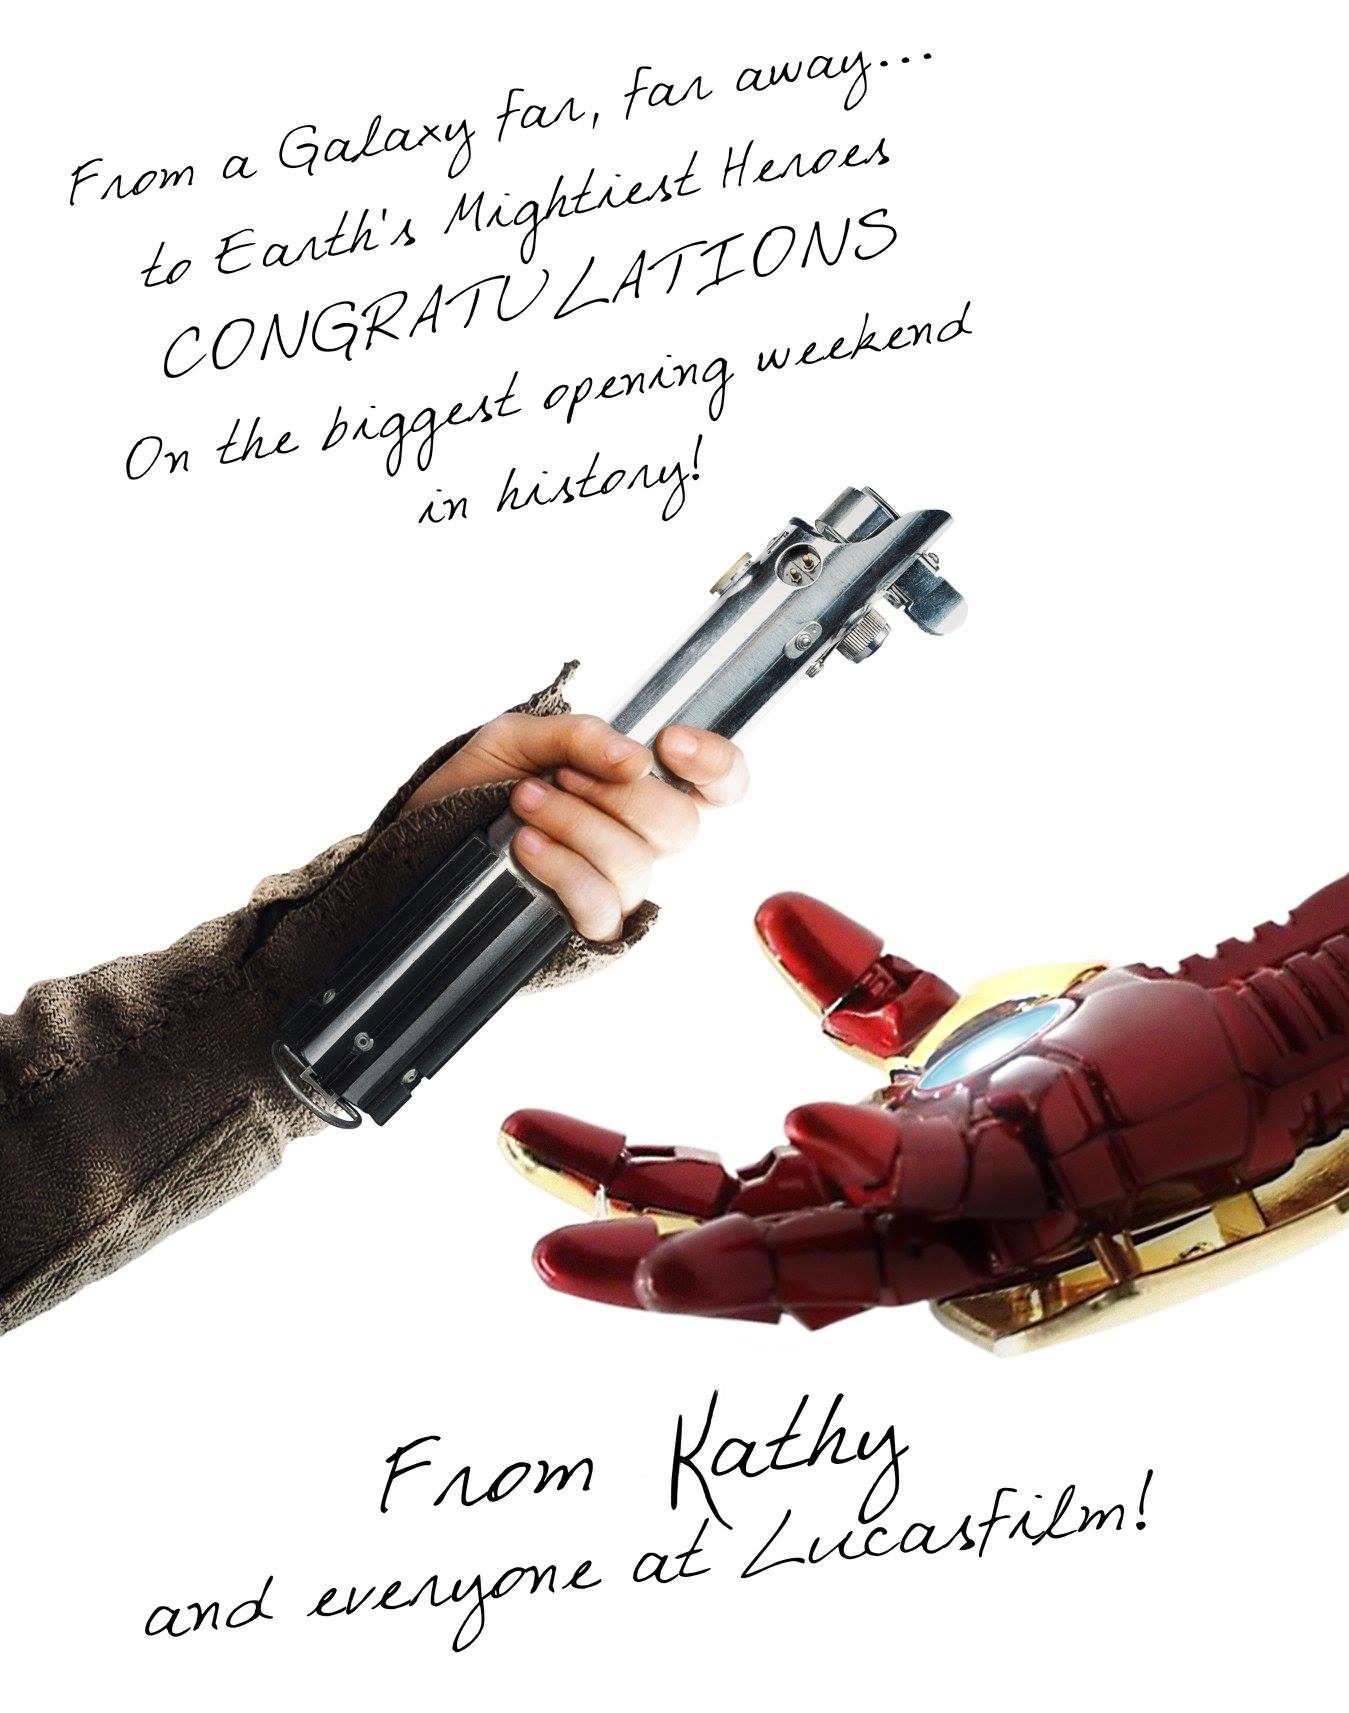 Plagát od štúdia Lucasfilm, ktorý gratuluje Infinity War, keď sa im podarilo poraziť ich stanovený rekord za najväčší otvárak v histórii